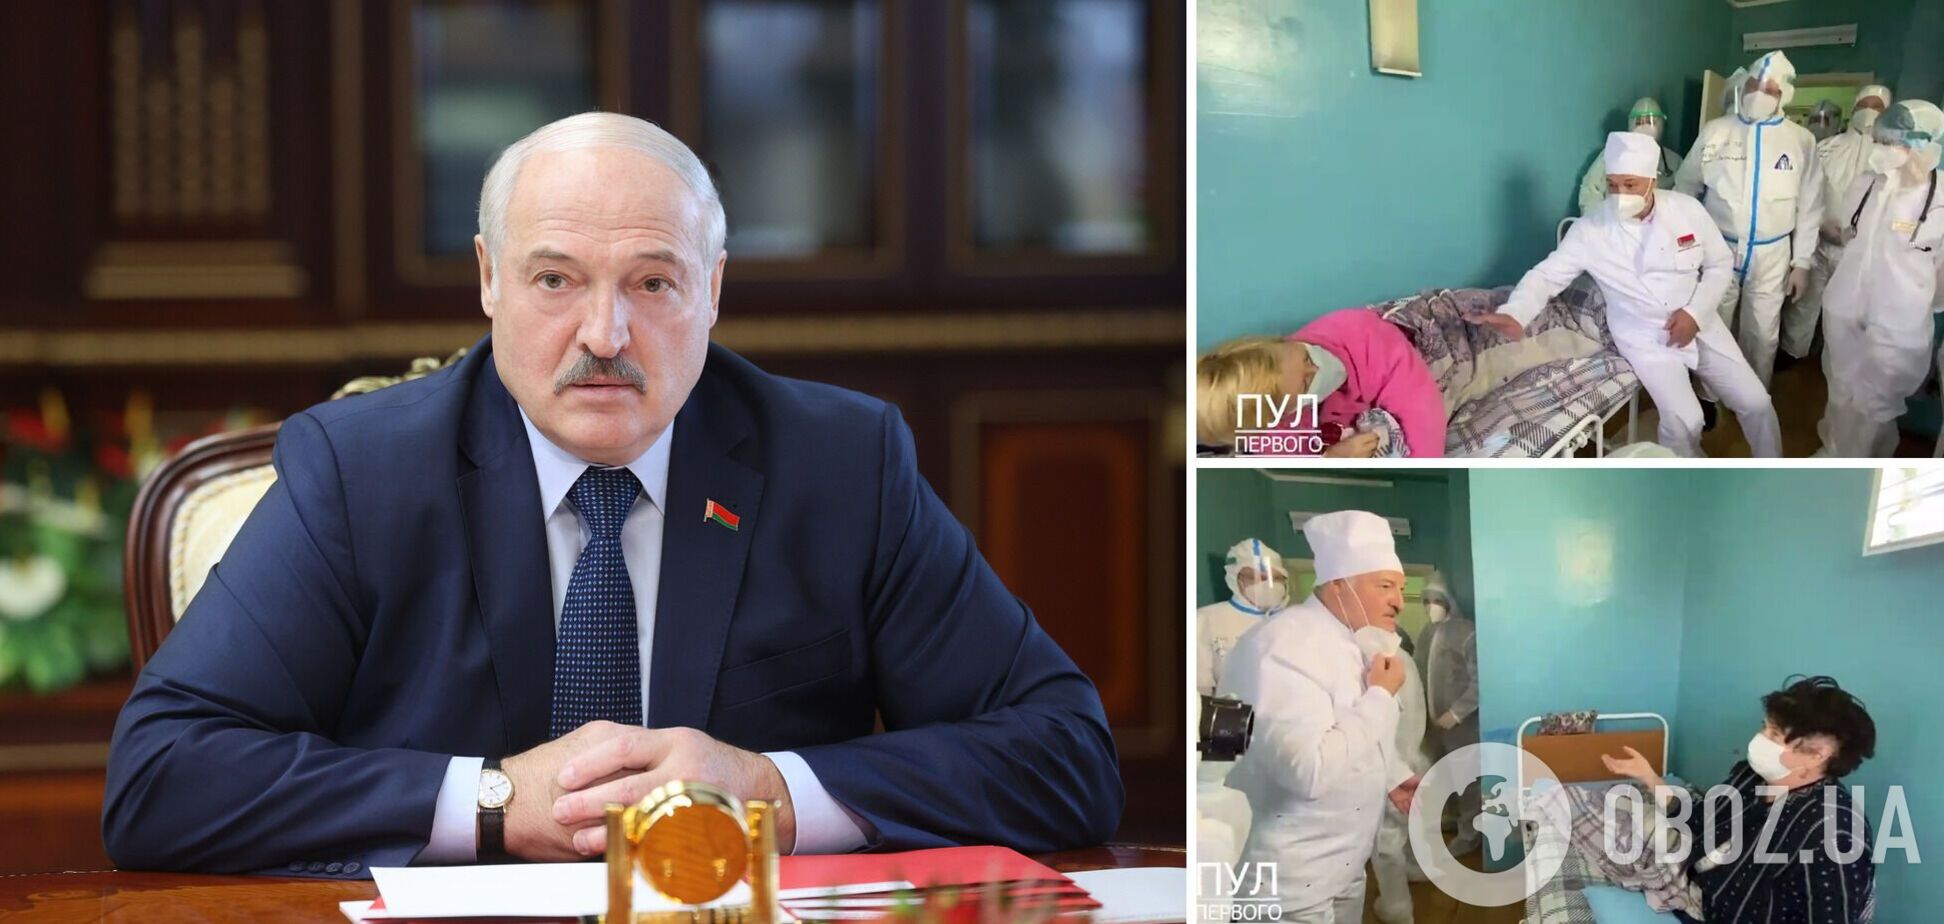 Лукашенко снял маску, общаясь с ковидными пациентами